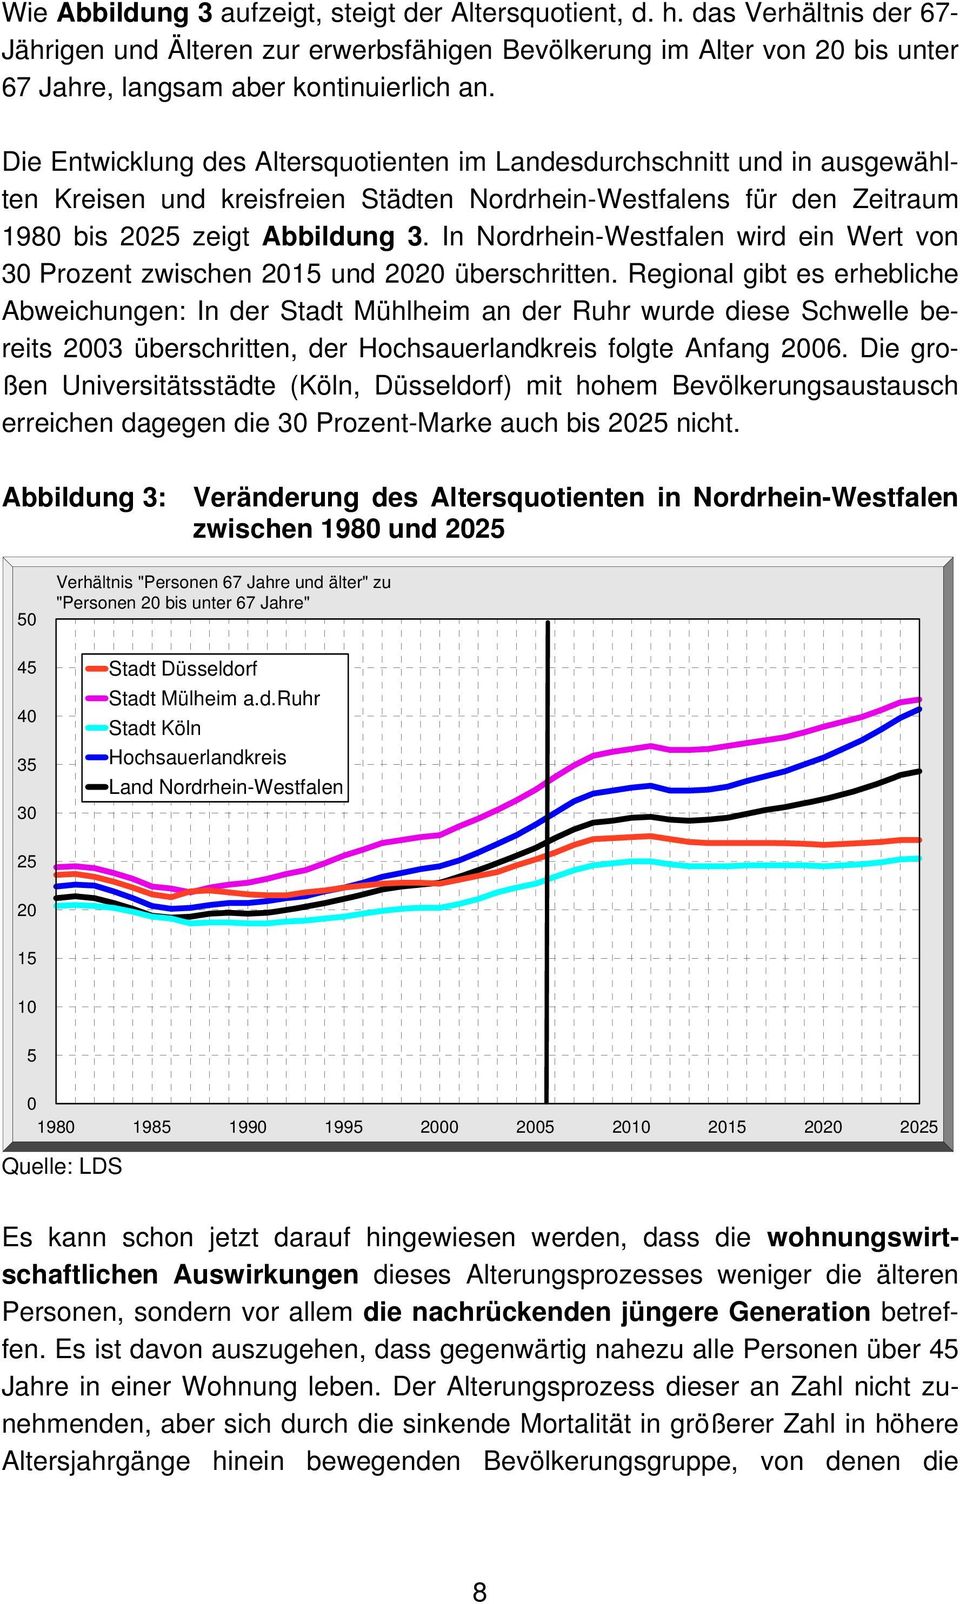 Die Entwicklung des Altersquotienten im Landesdurchschnitt und in ausgewählten Kreisen und kreisfreien Städten Nordrhein-Westfalens für den Zeitraum 1980 bis 2025 zeigt Abbildung 3.